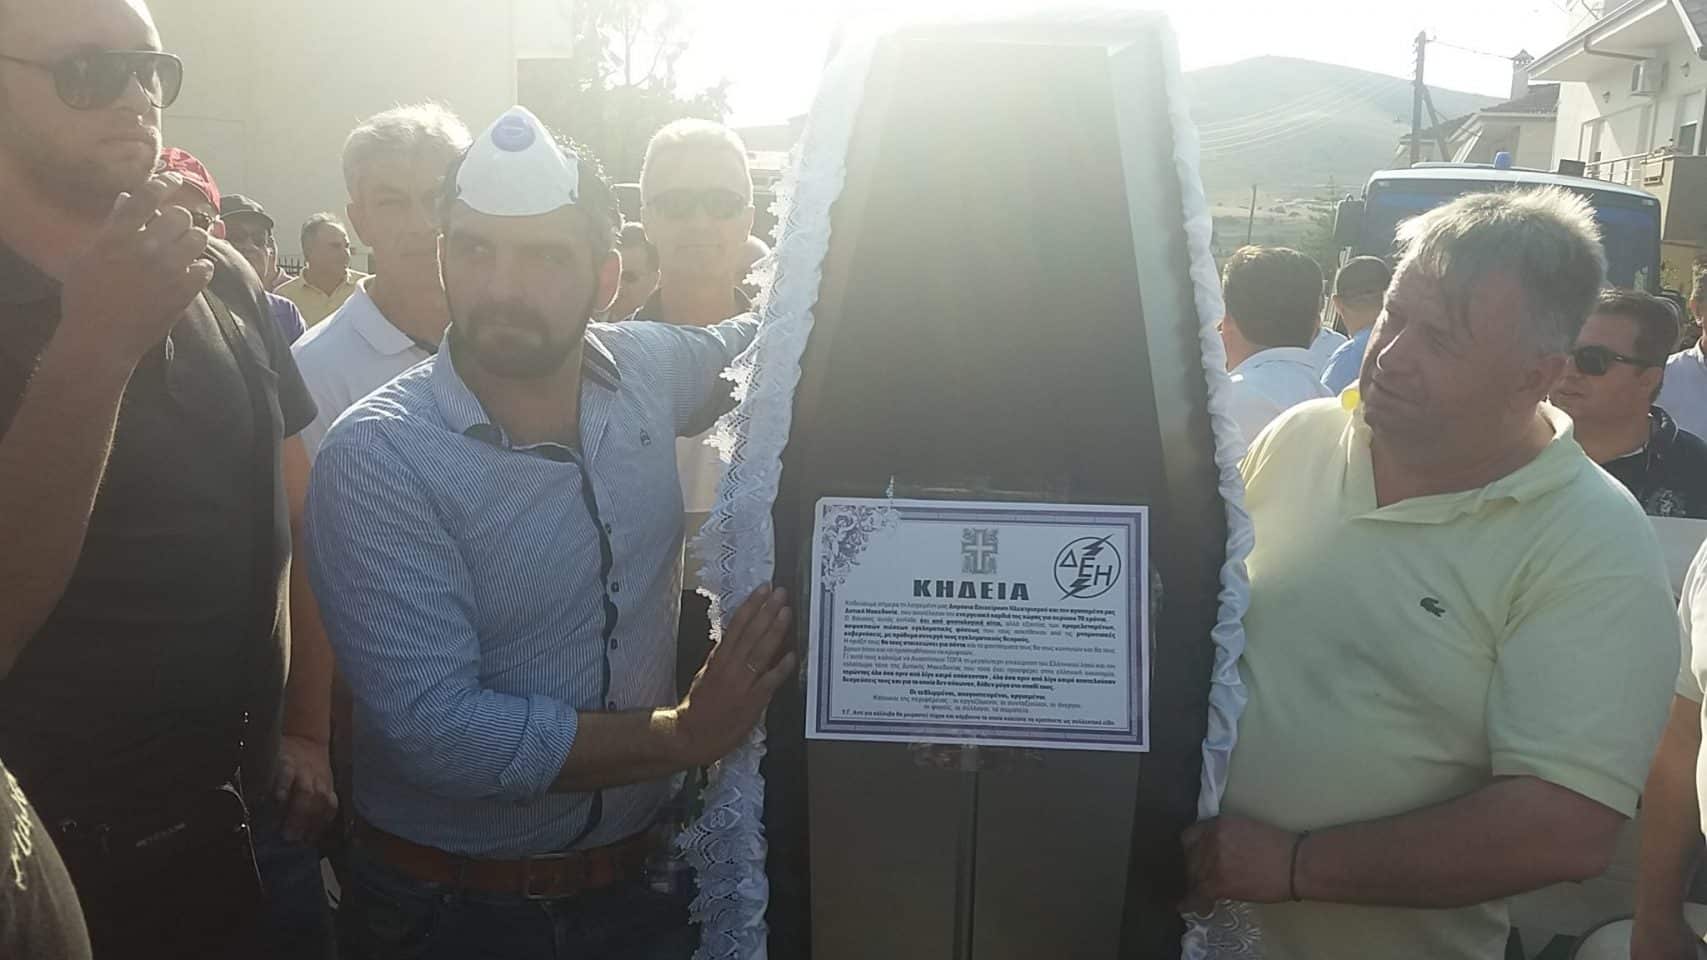 tsipras-kozani-feretro-6 Με φέρετρο υποδέχθηκαν τον Τσίπρα στη Κοζάνη [εικόνες & βίτνεο]